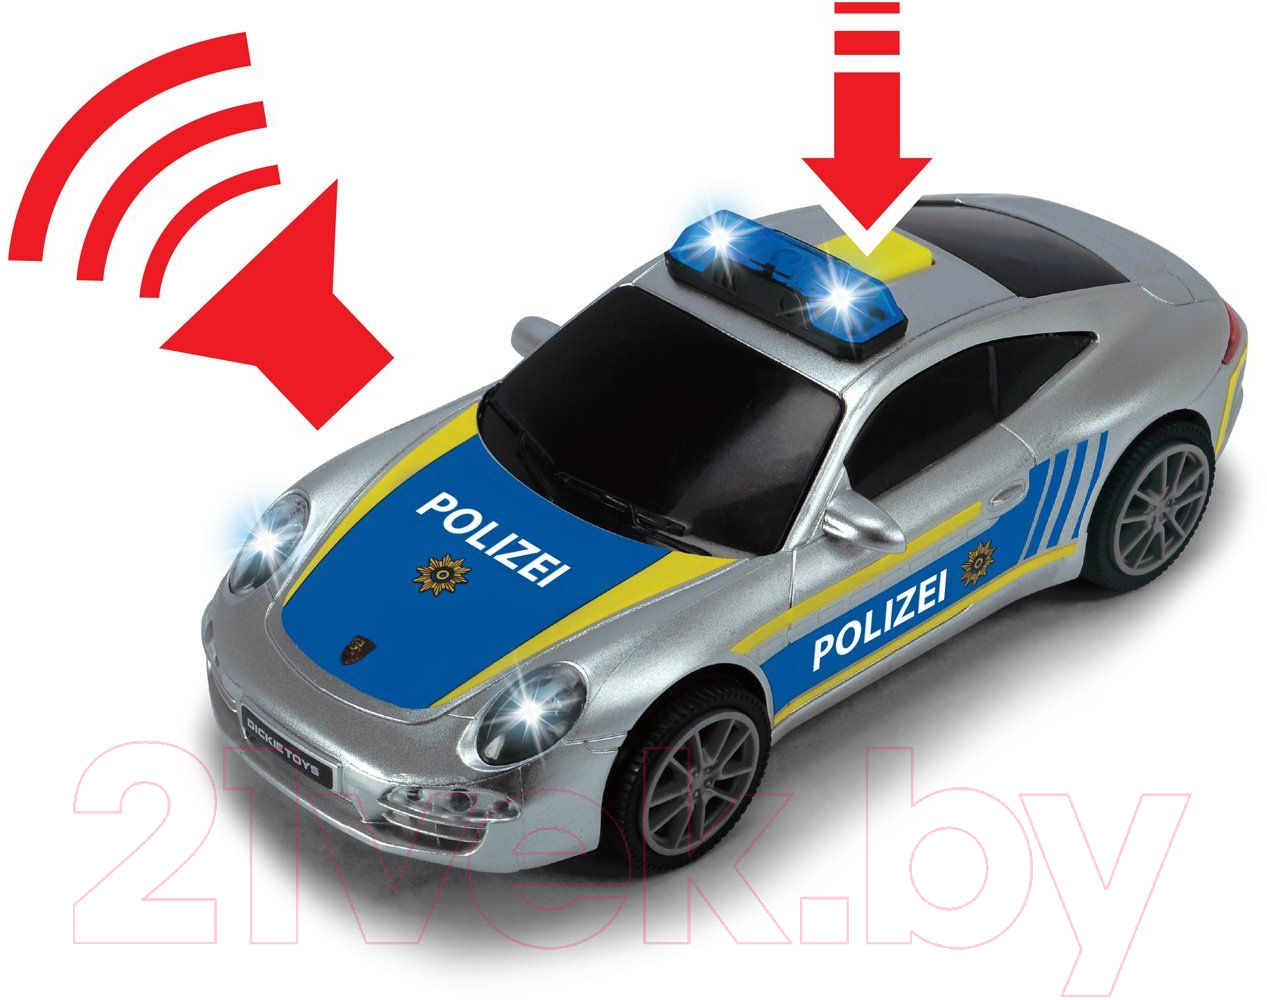 Автосервис игрушечный Dickie Полицейская станция / 3715010